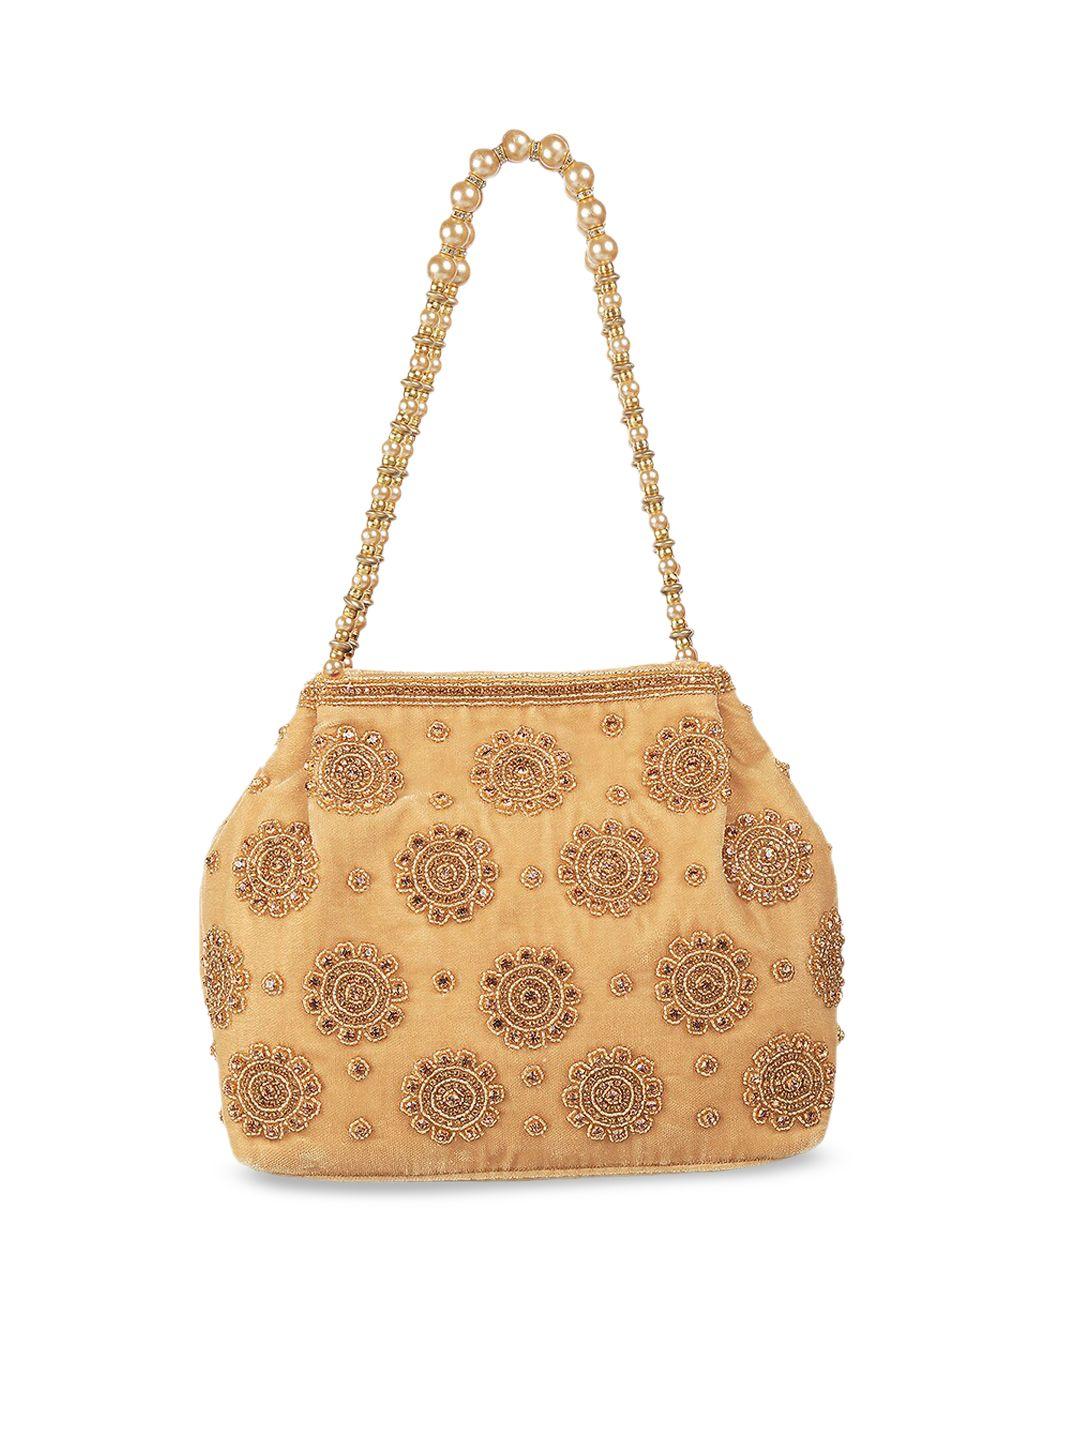 mochi gold-toned floral embellished structured shoulder bag